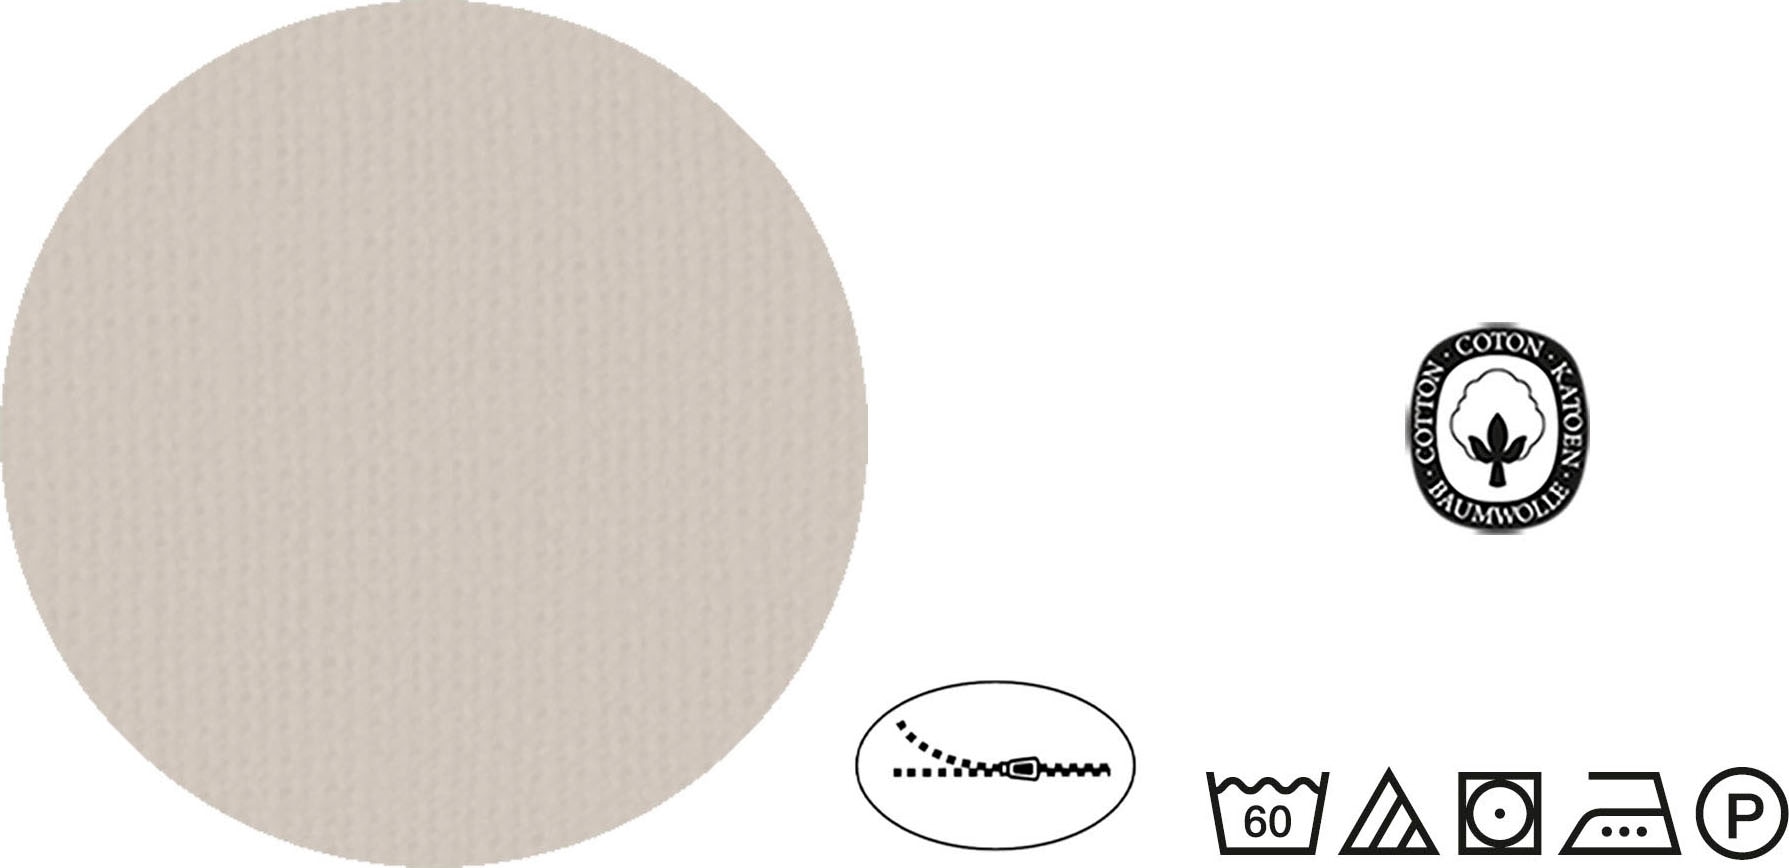 TOM TAILOR Wendebettwäsche »Siena«, im Streifen Design, aus 100% Baumwolle, in Linon Qualität, mit Reißverschluss, pflegeleicht, Bettwäsche-Set STANDARD 100 by OEKO-TEX® zertifiziert mit Tom Tailor-Logodruck